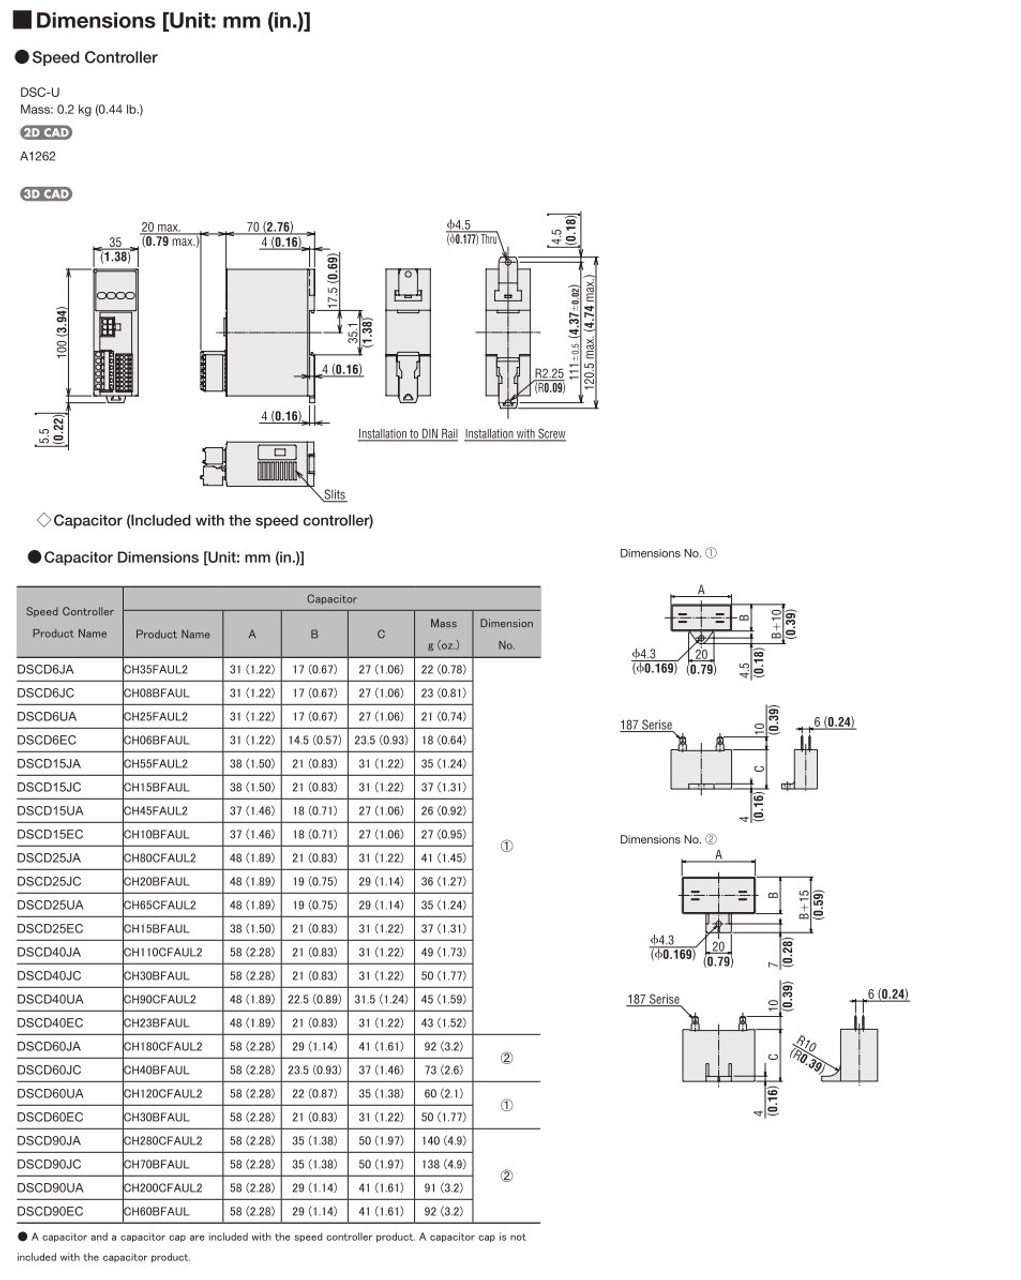 SCM315EC-30 / DSCD15EC - Dimensions